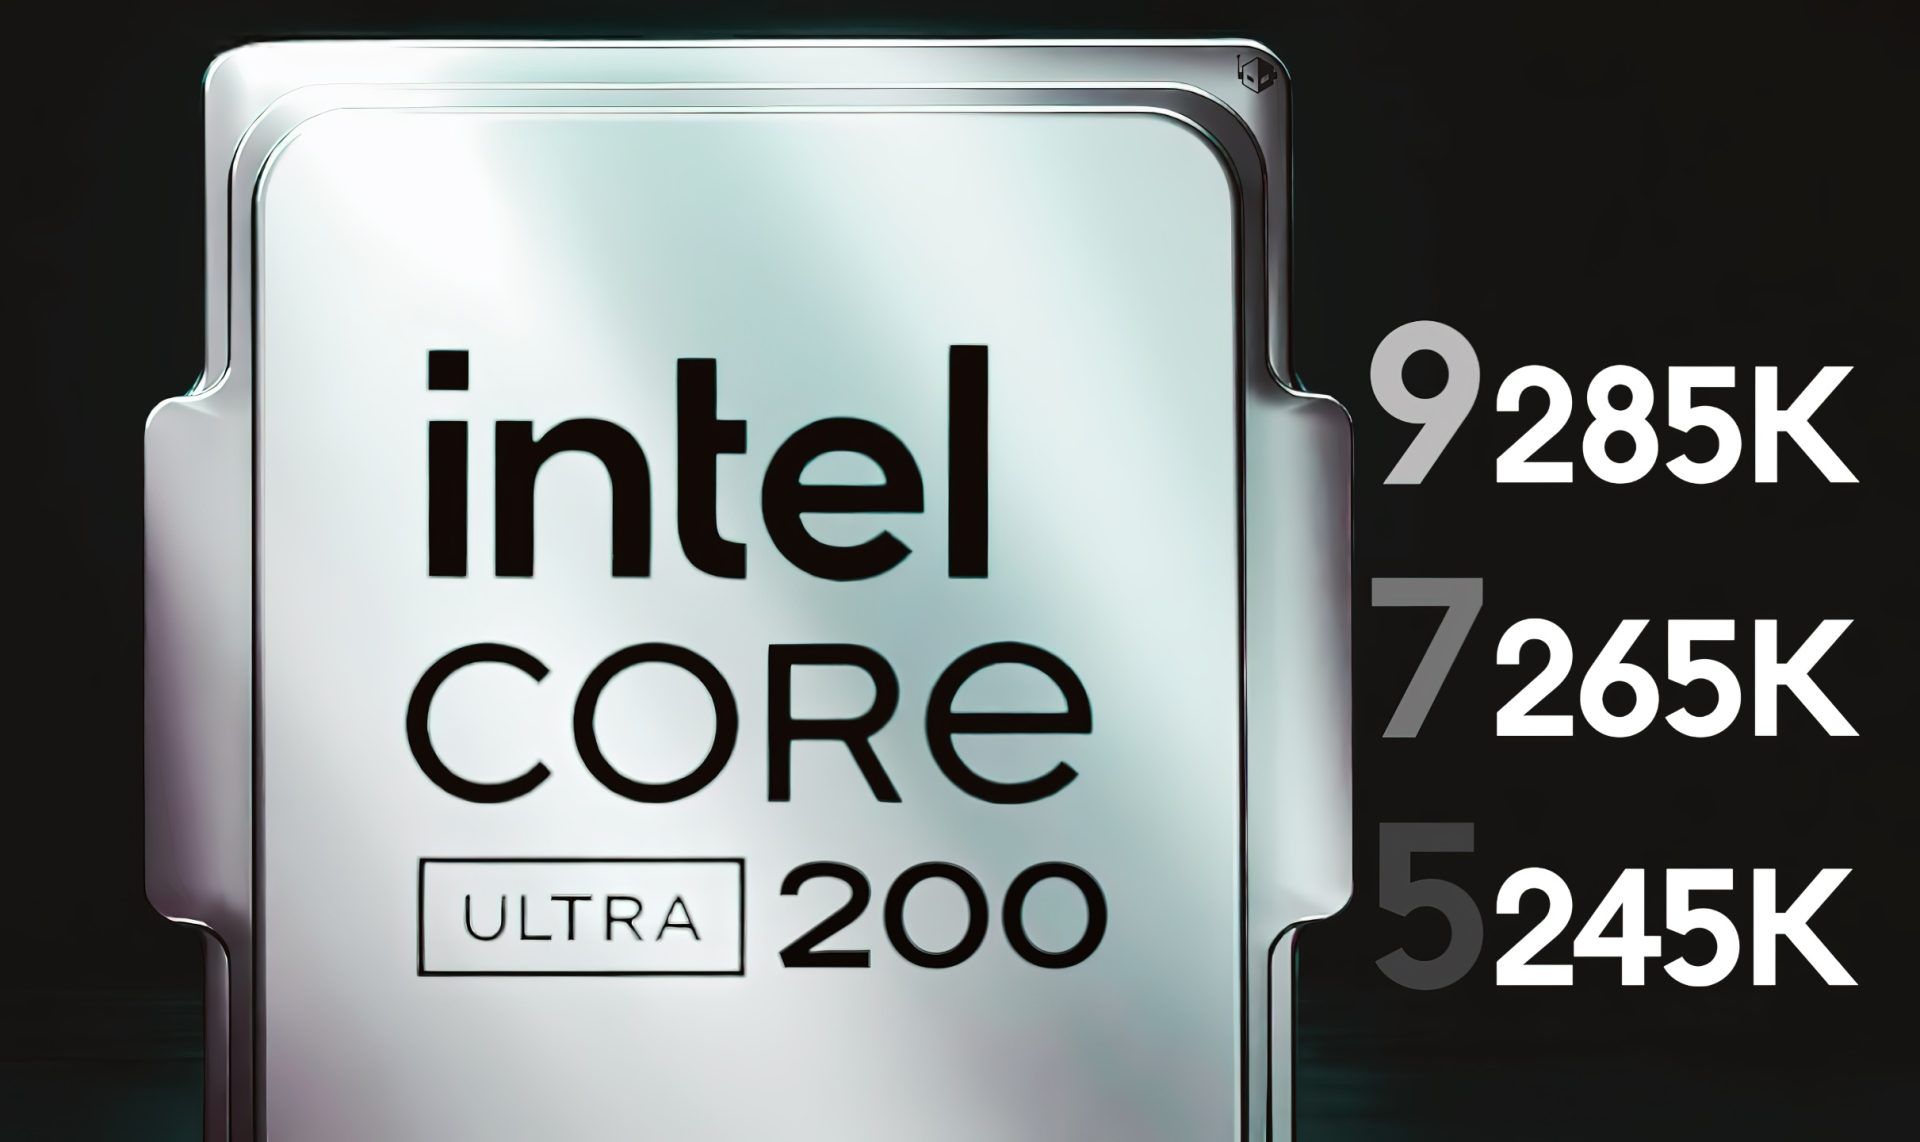 以 Core Ultra 200 品牌推出，消息称英特尔 10 月发售 Arrow Lake 桌面 CPU